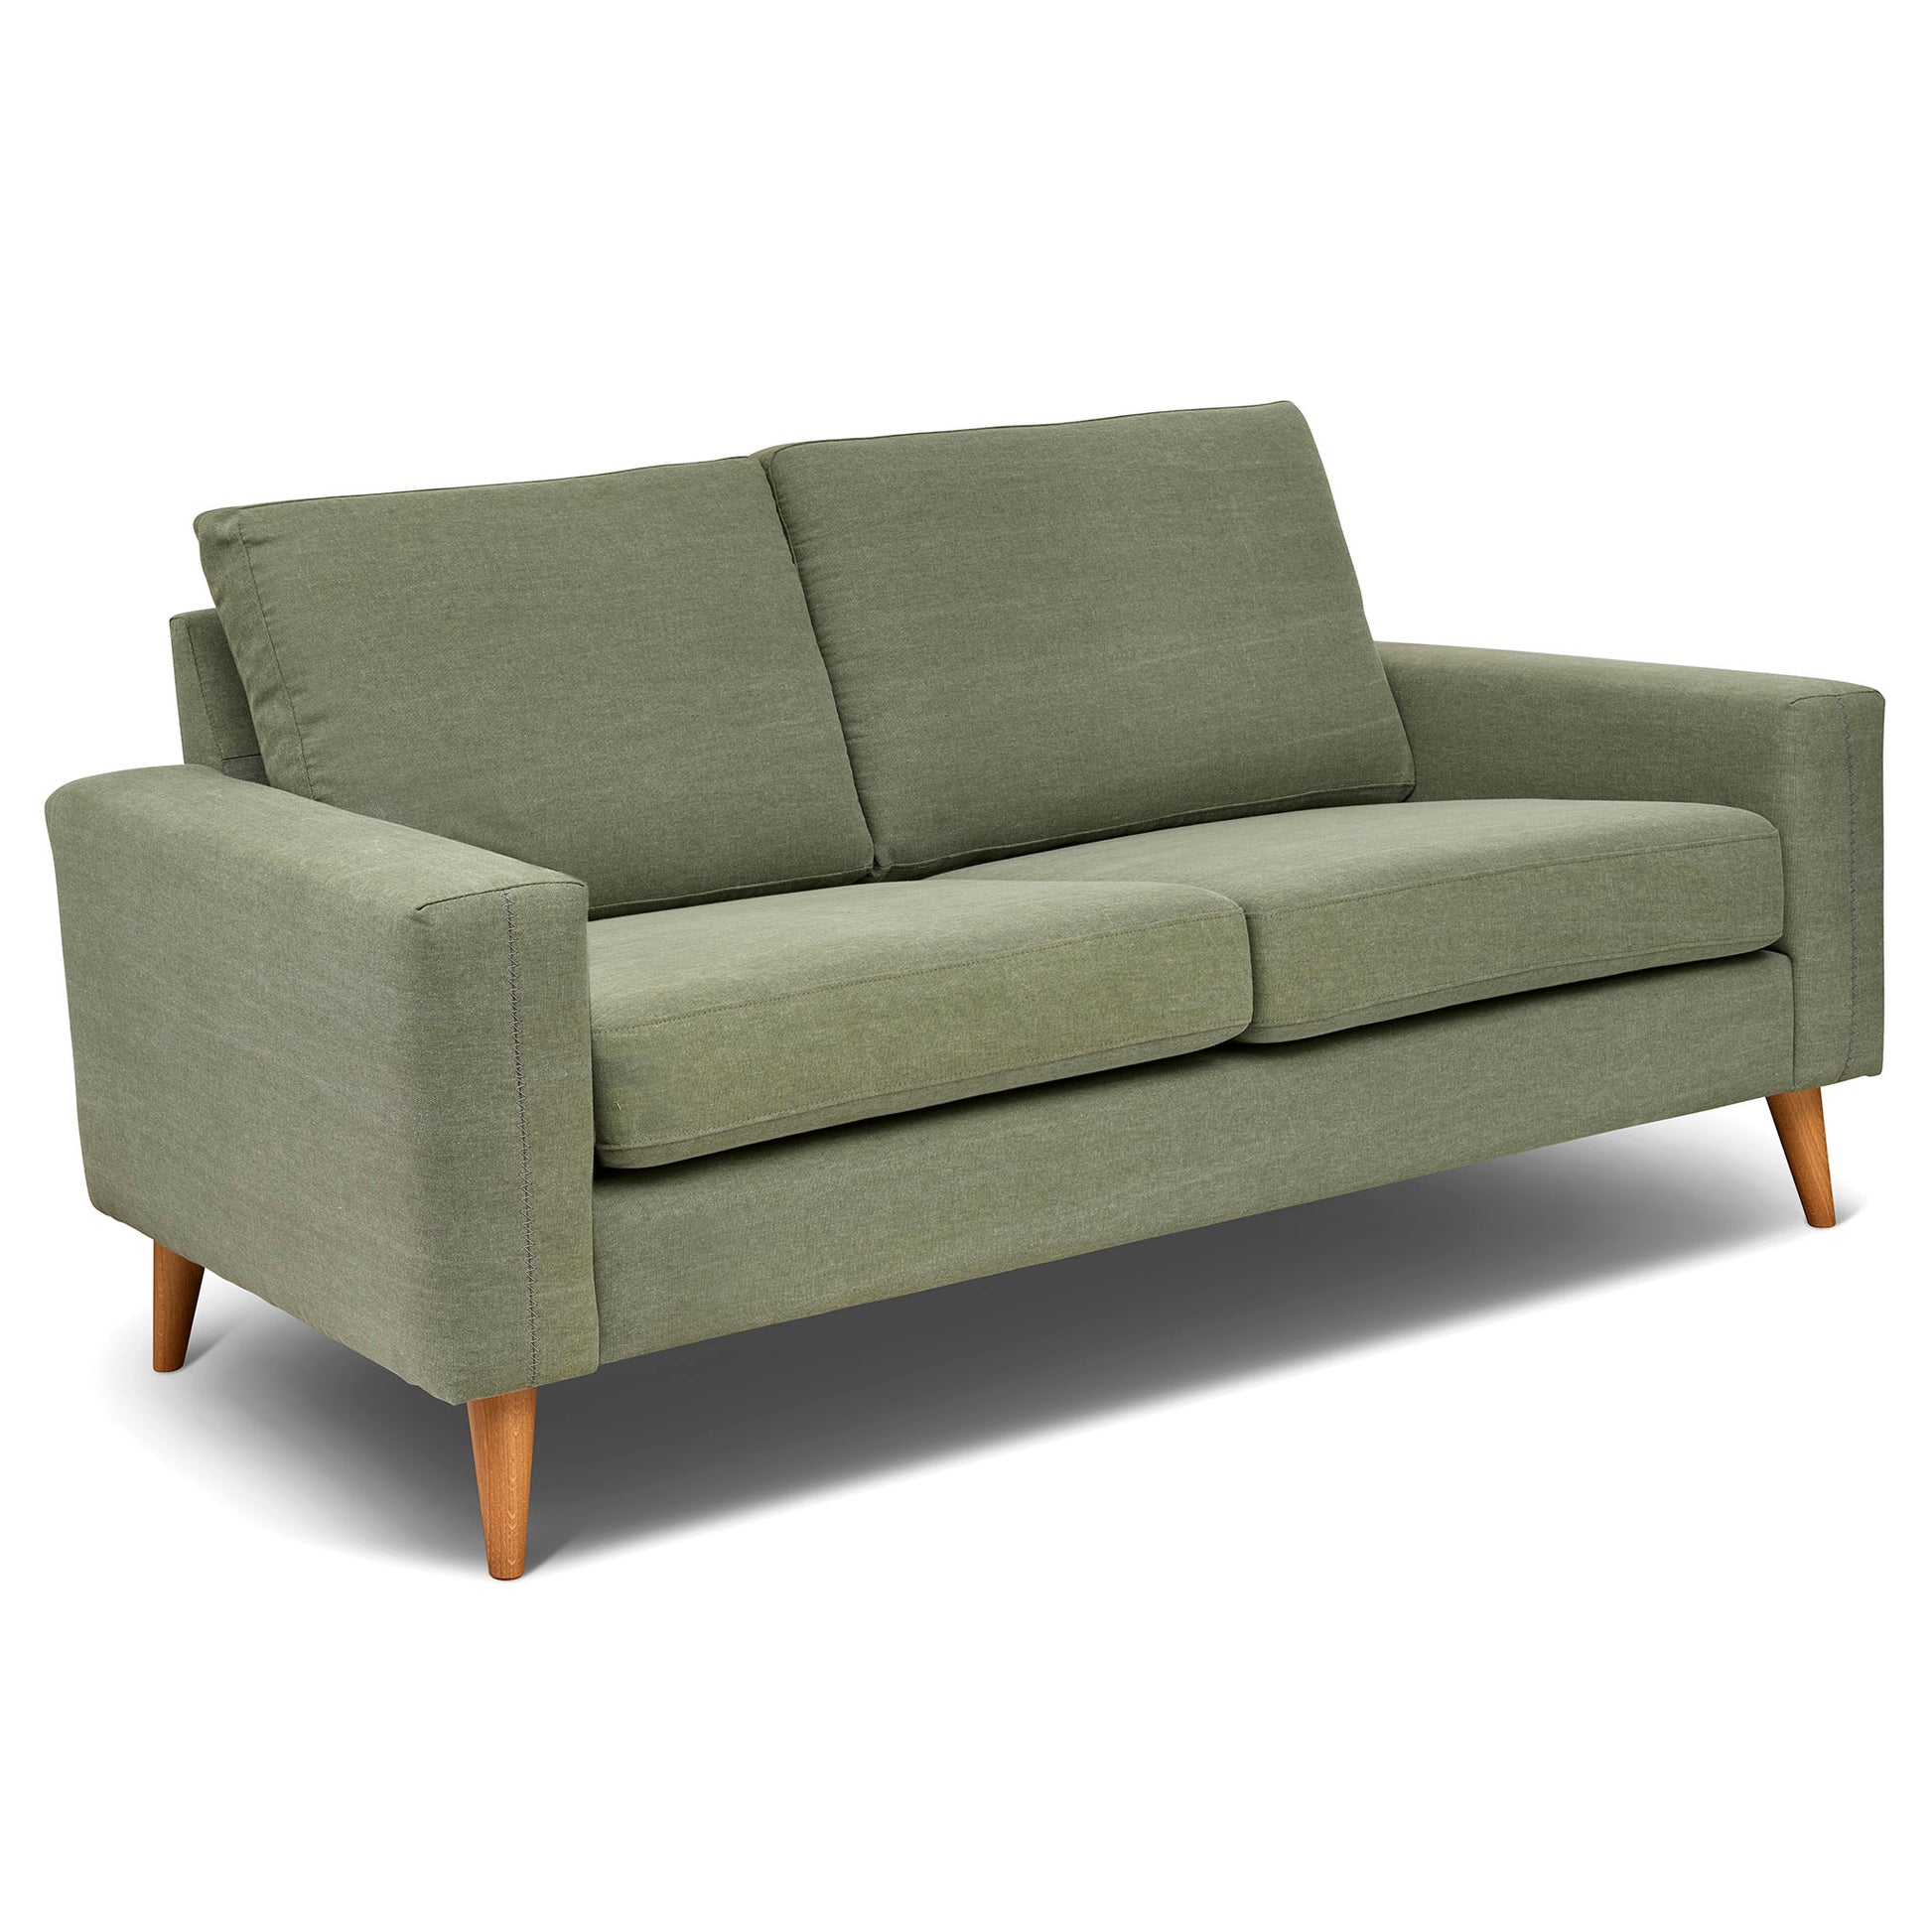 Grön 2,5-sits soffa 184 cm bred, som är sittvänlig för äldre